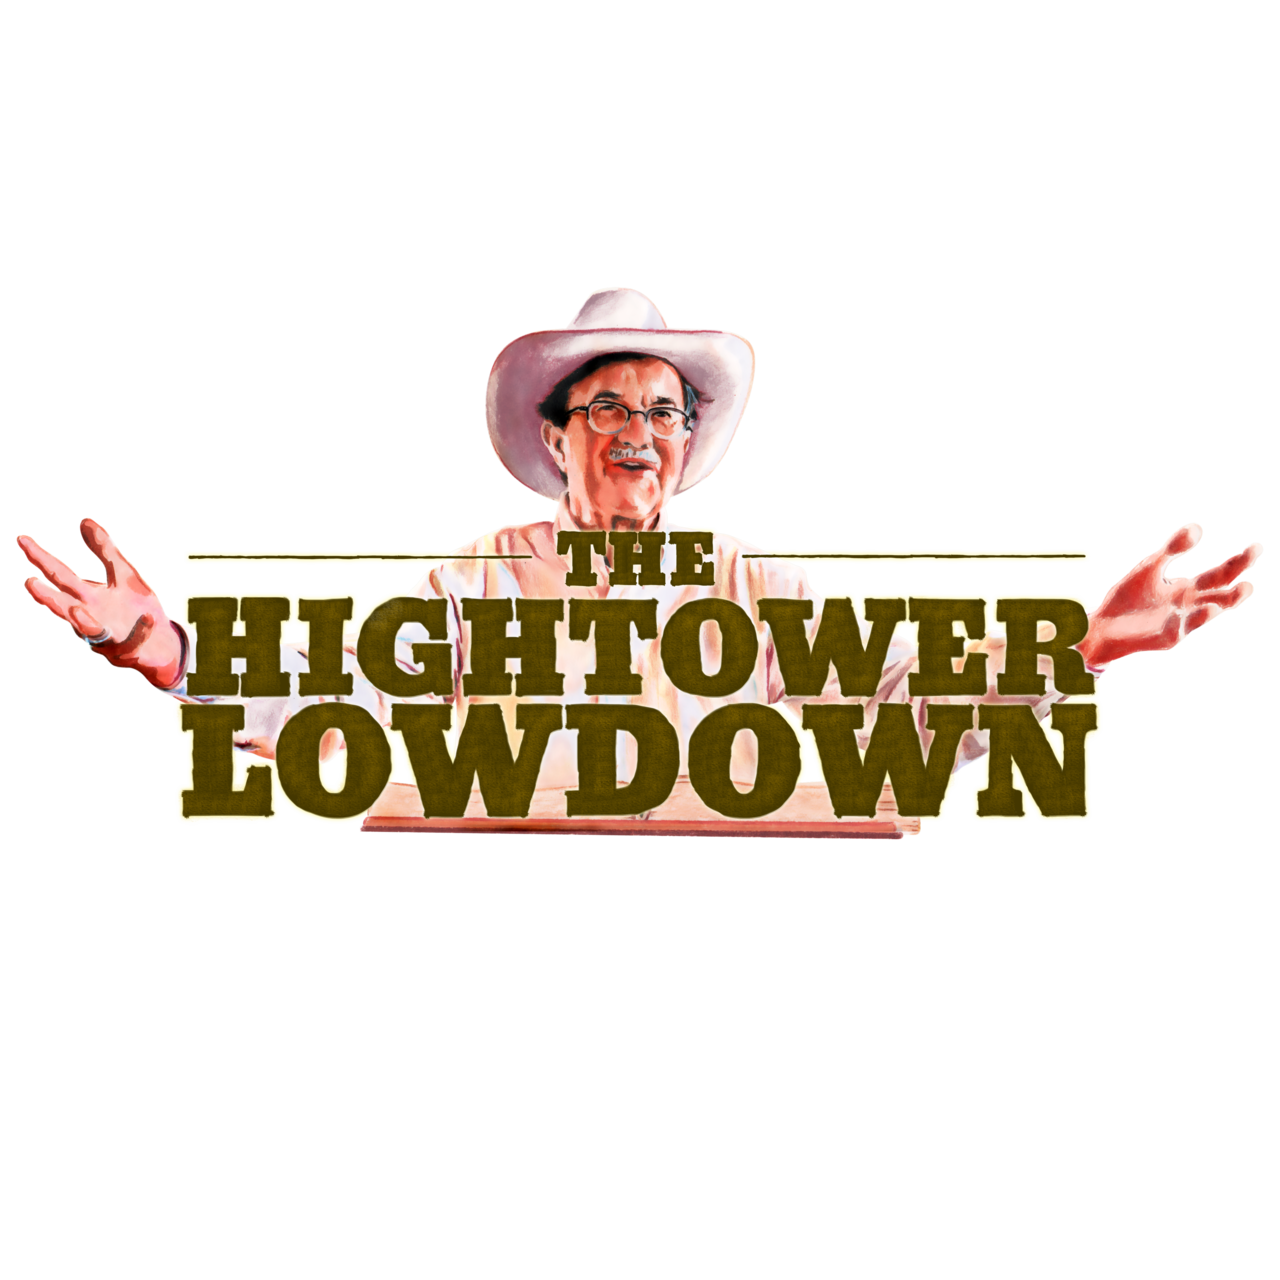 Jim Hightower's Hightower Lowdown